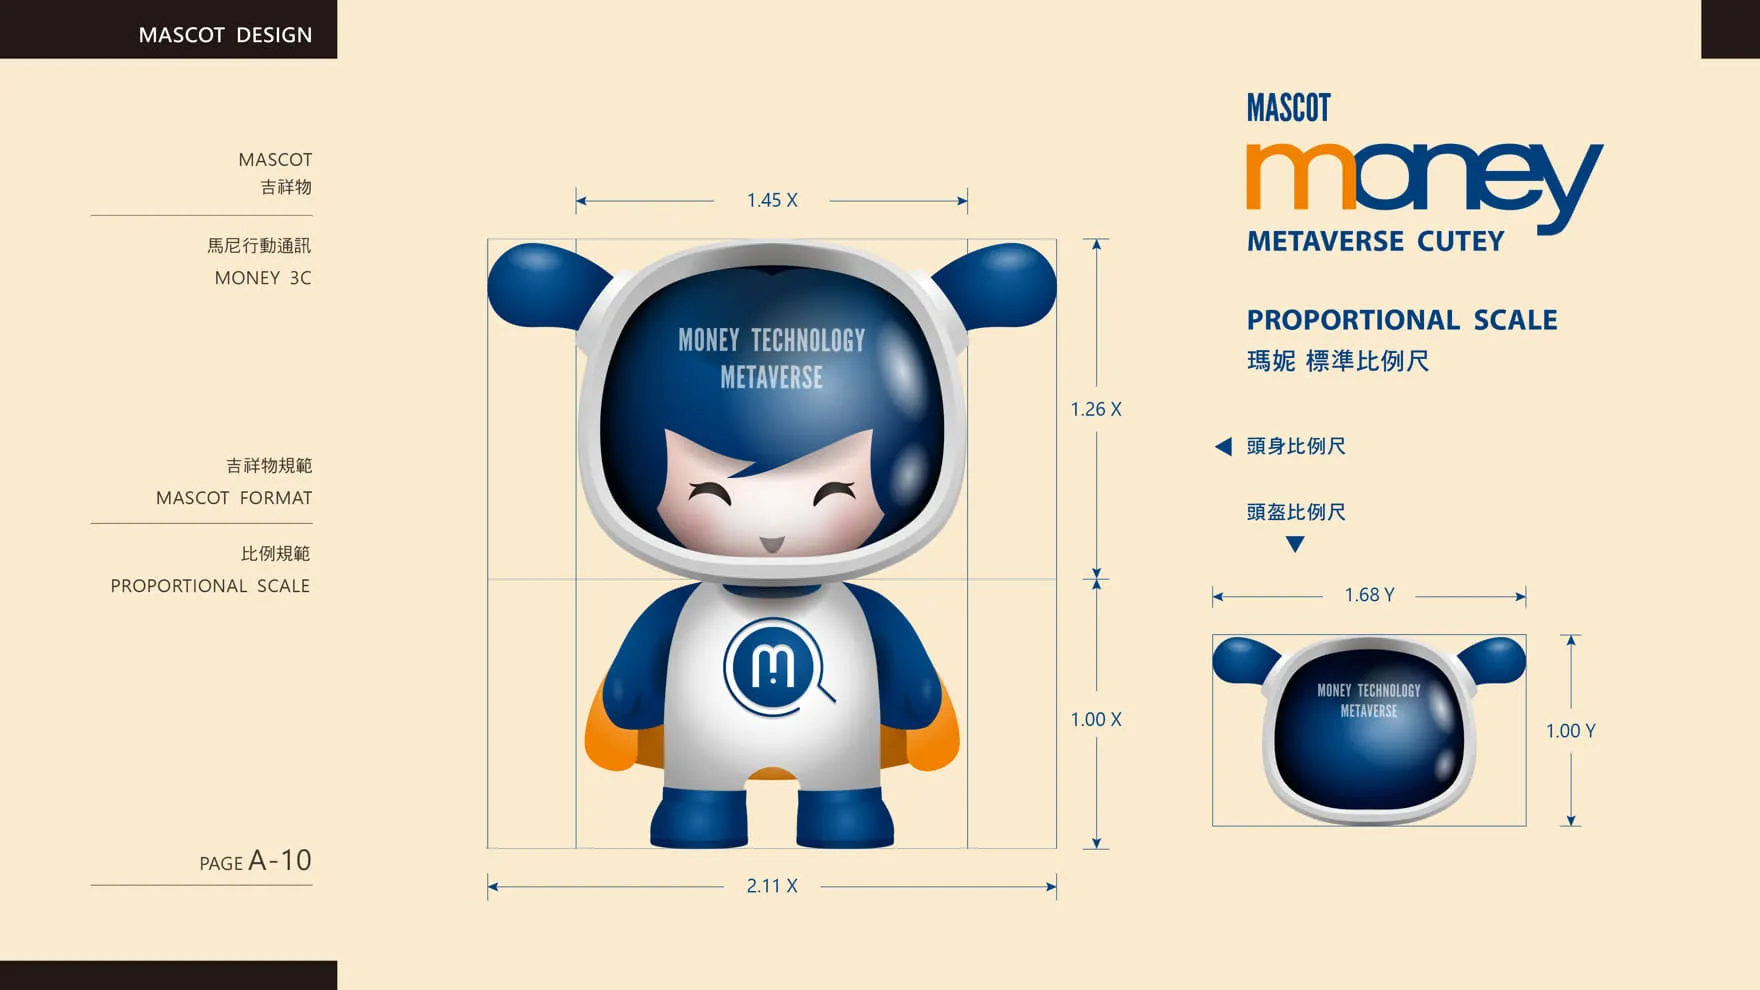 馬尼行動通訊品牌吉祥物設計結構比例設定 Mascot Proportional Scale